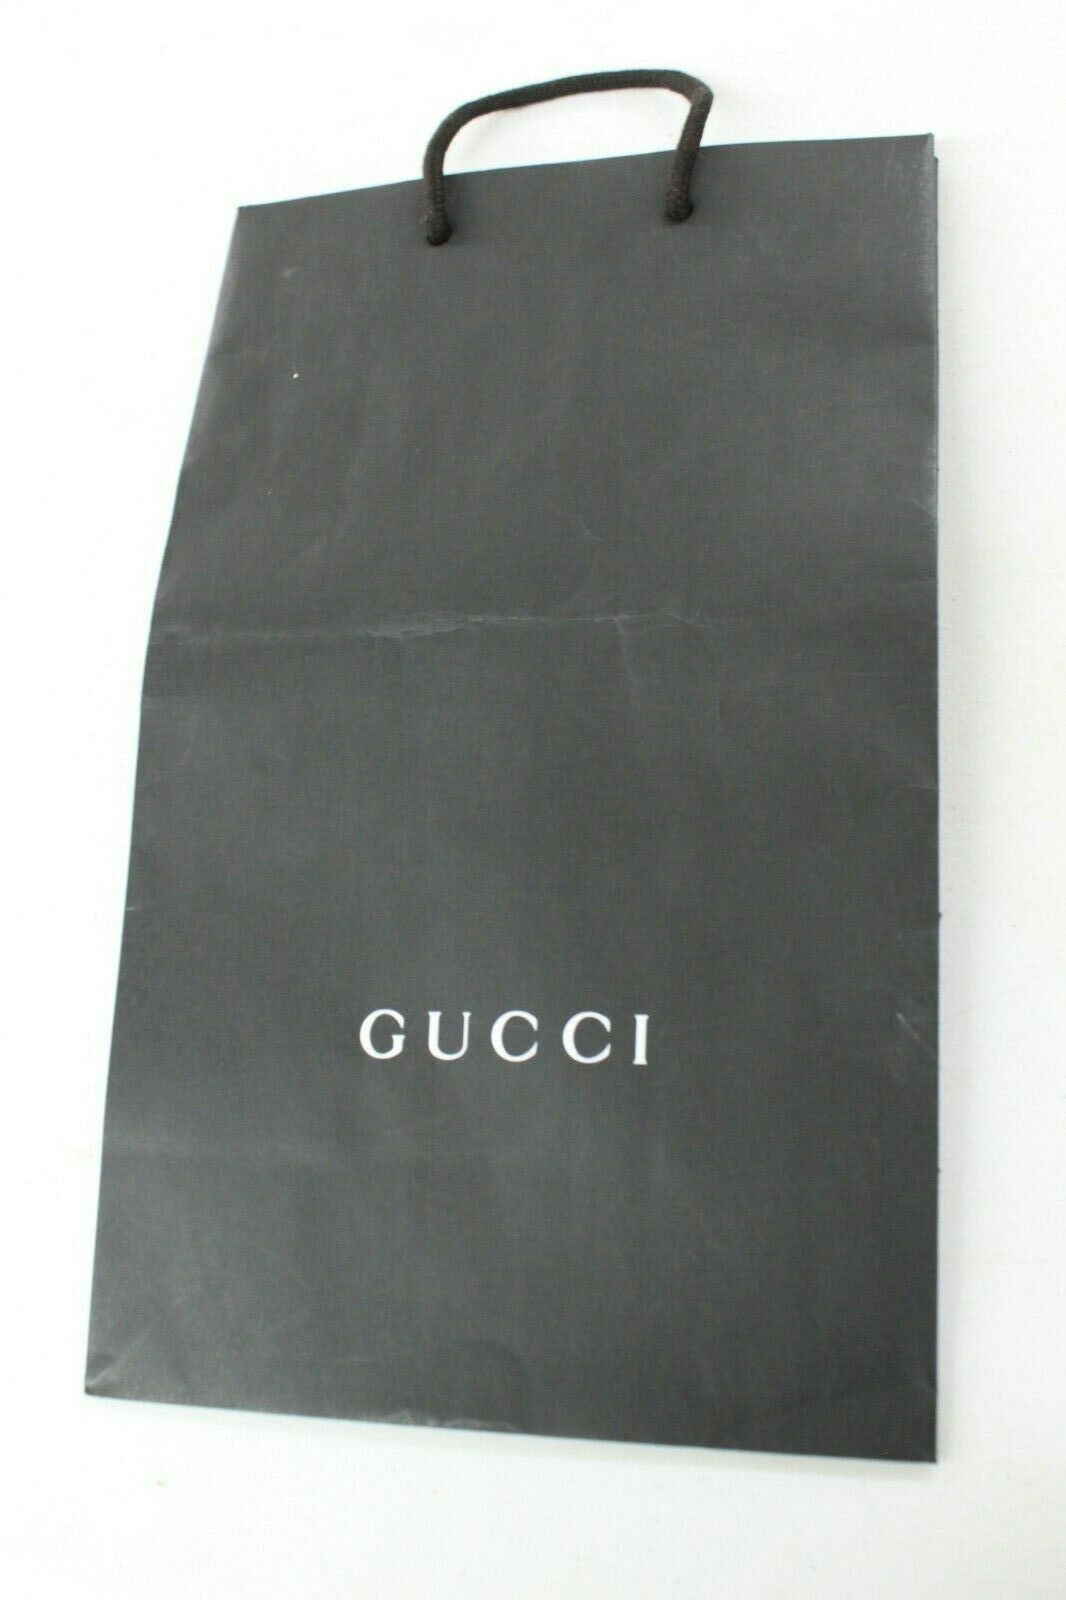 gucci gift bag